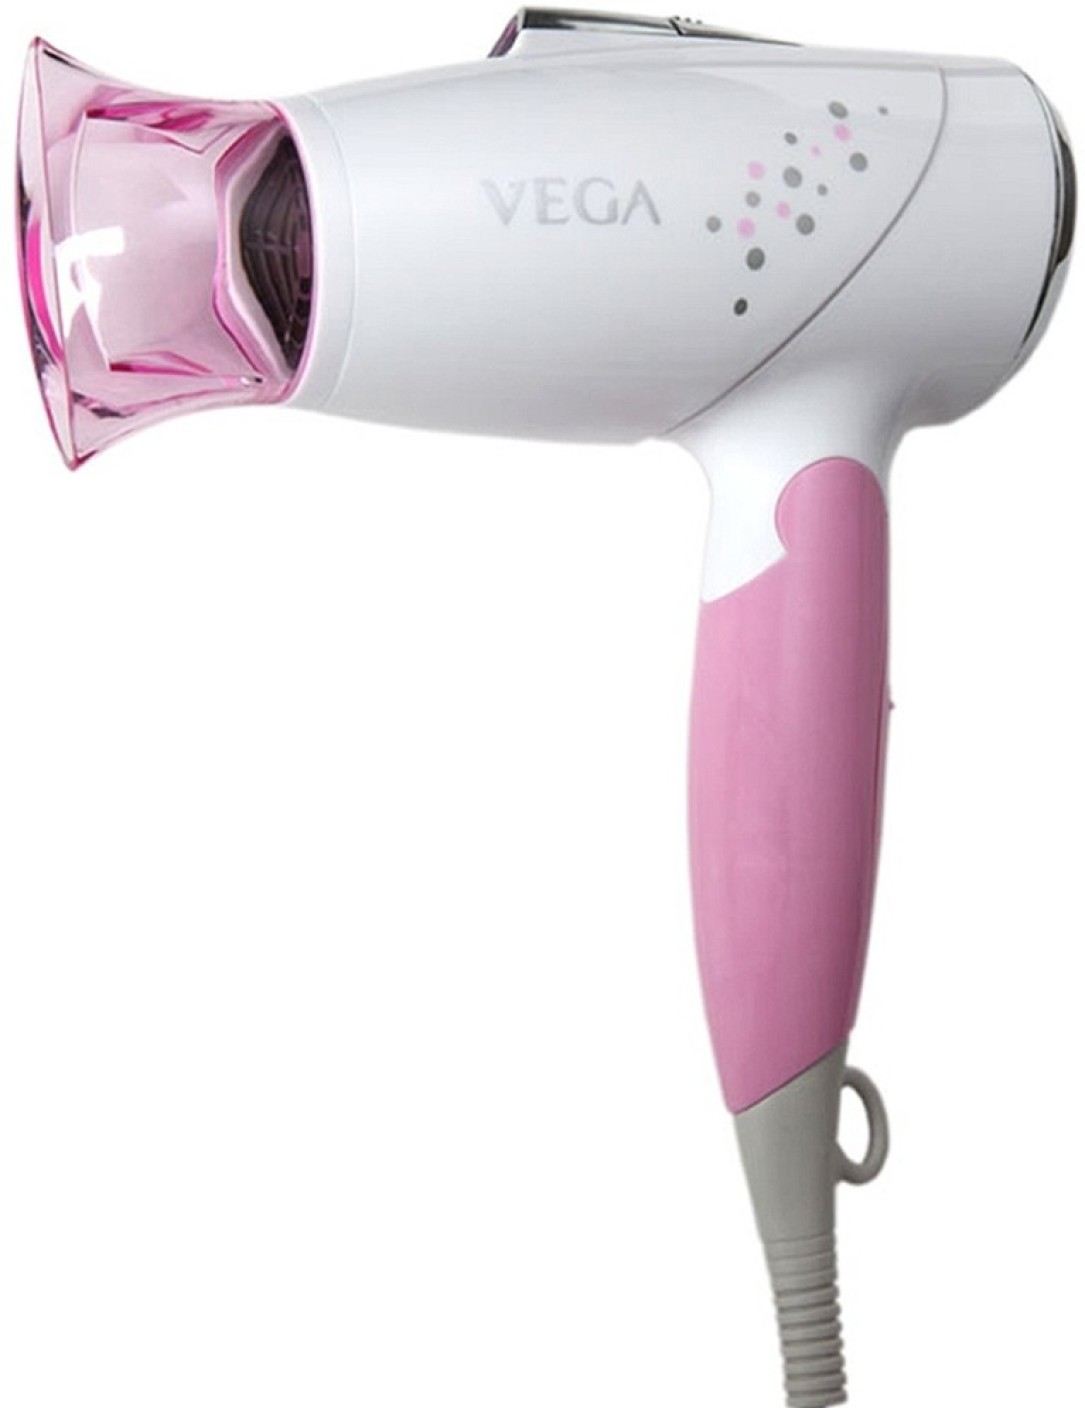 Vega Aroma VHDH-09 Hair Dryer - Vega : Flipkart.com